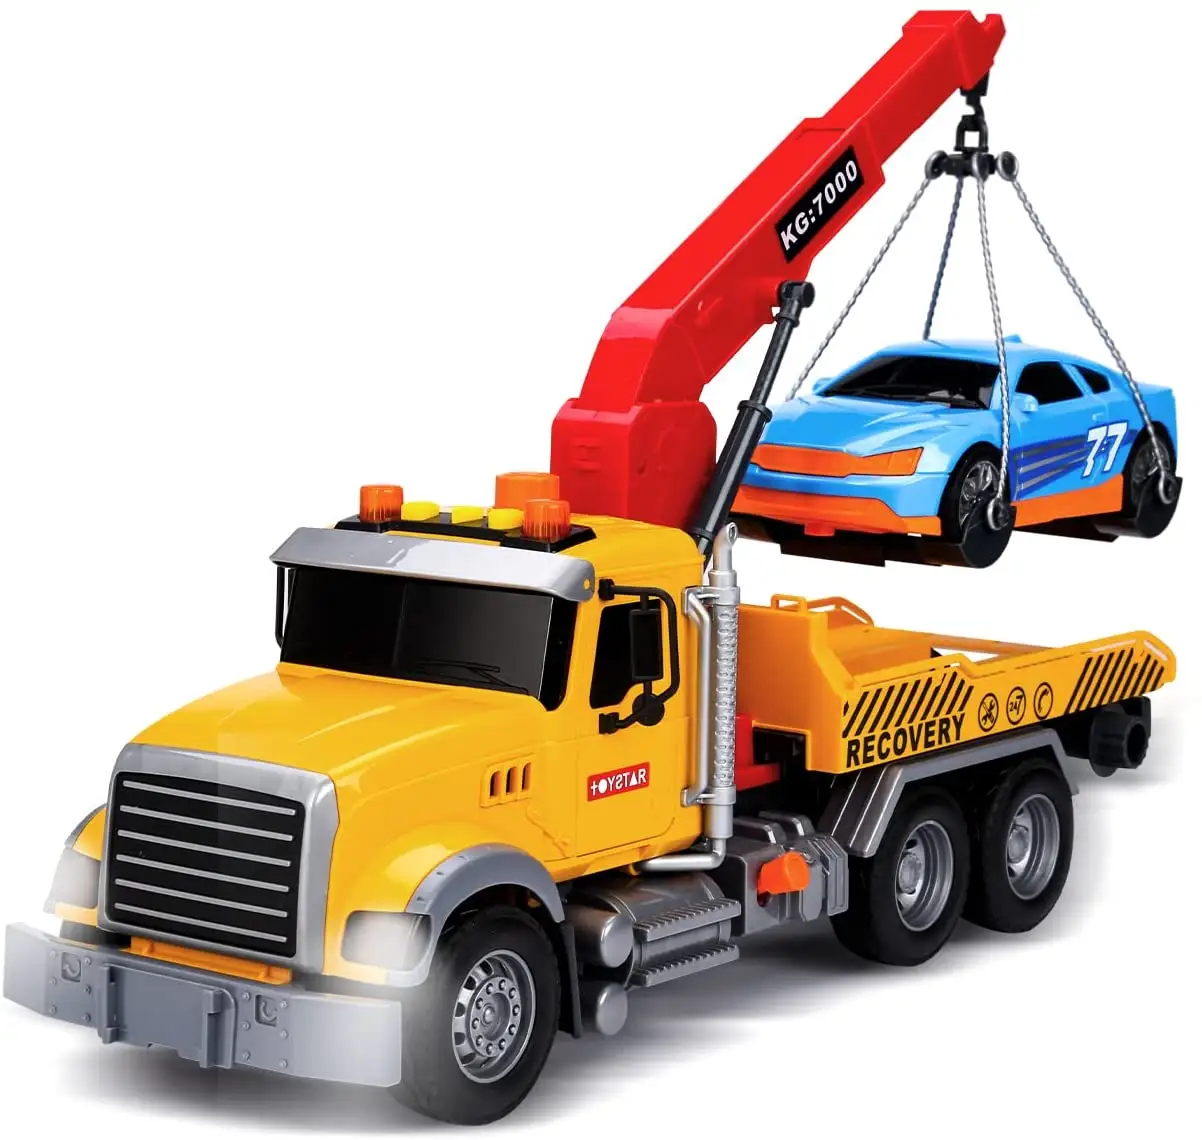 Grand camion de remorquage pour enfants, camion avec crochet et voiture, jouets en plastique, lumière et son, 1:18, nouveau,